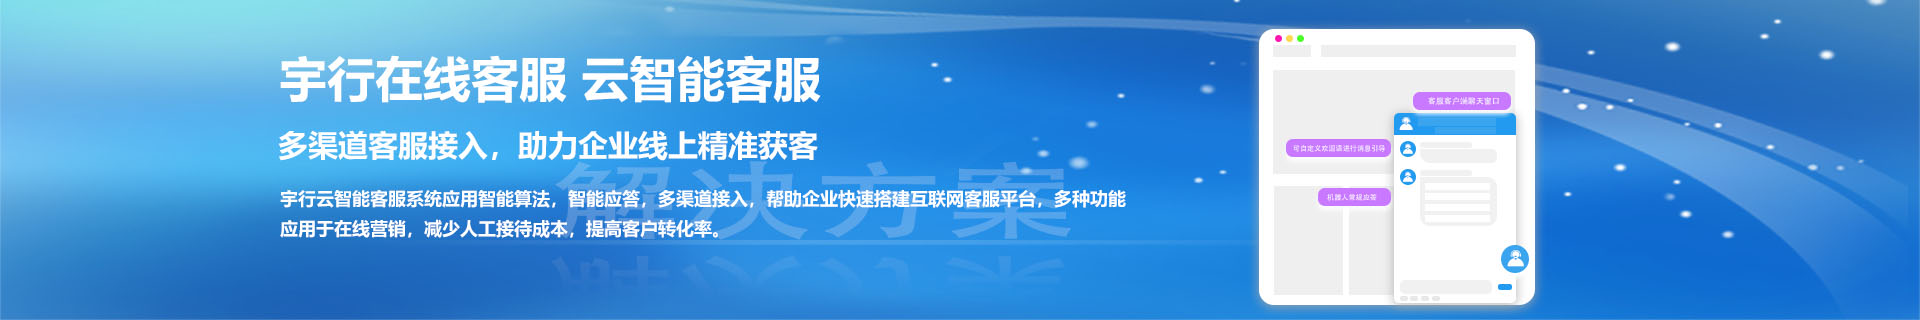 深圳宇行科技-上海在线客服系统软件-上海网站客服系统软件-上海手机网站客服系统软件-上海云智能客服系统软件-banner